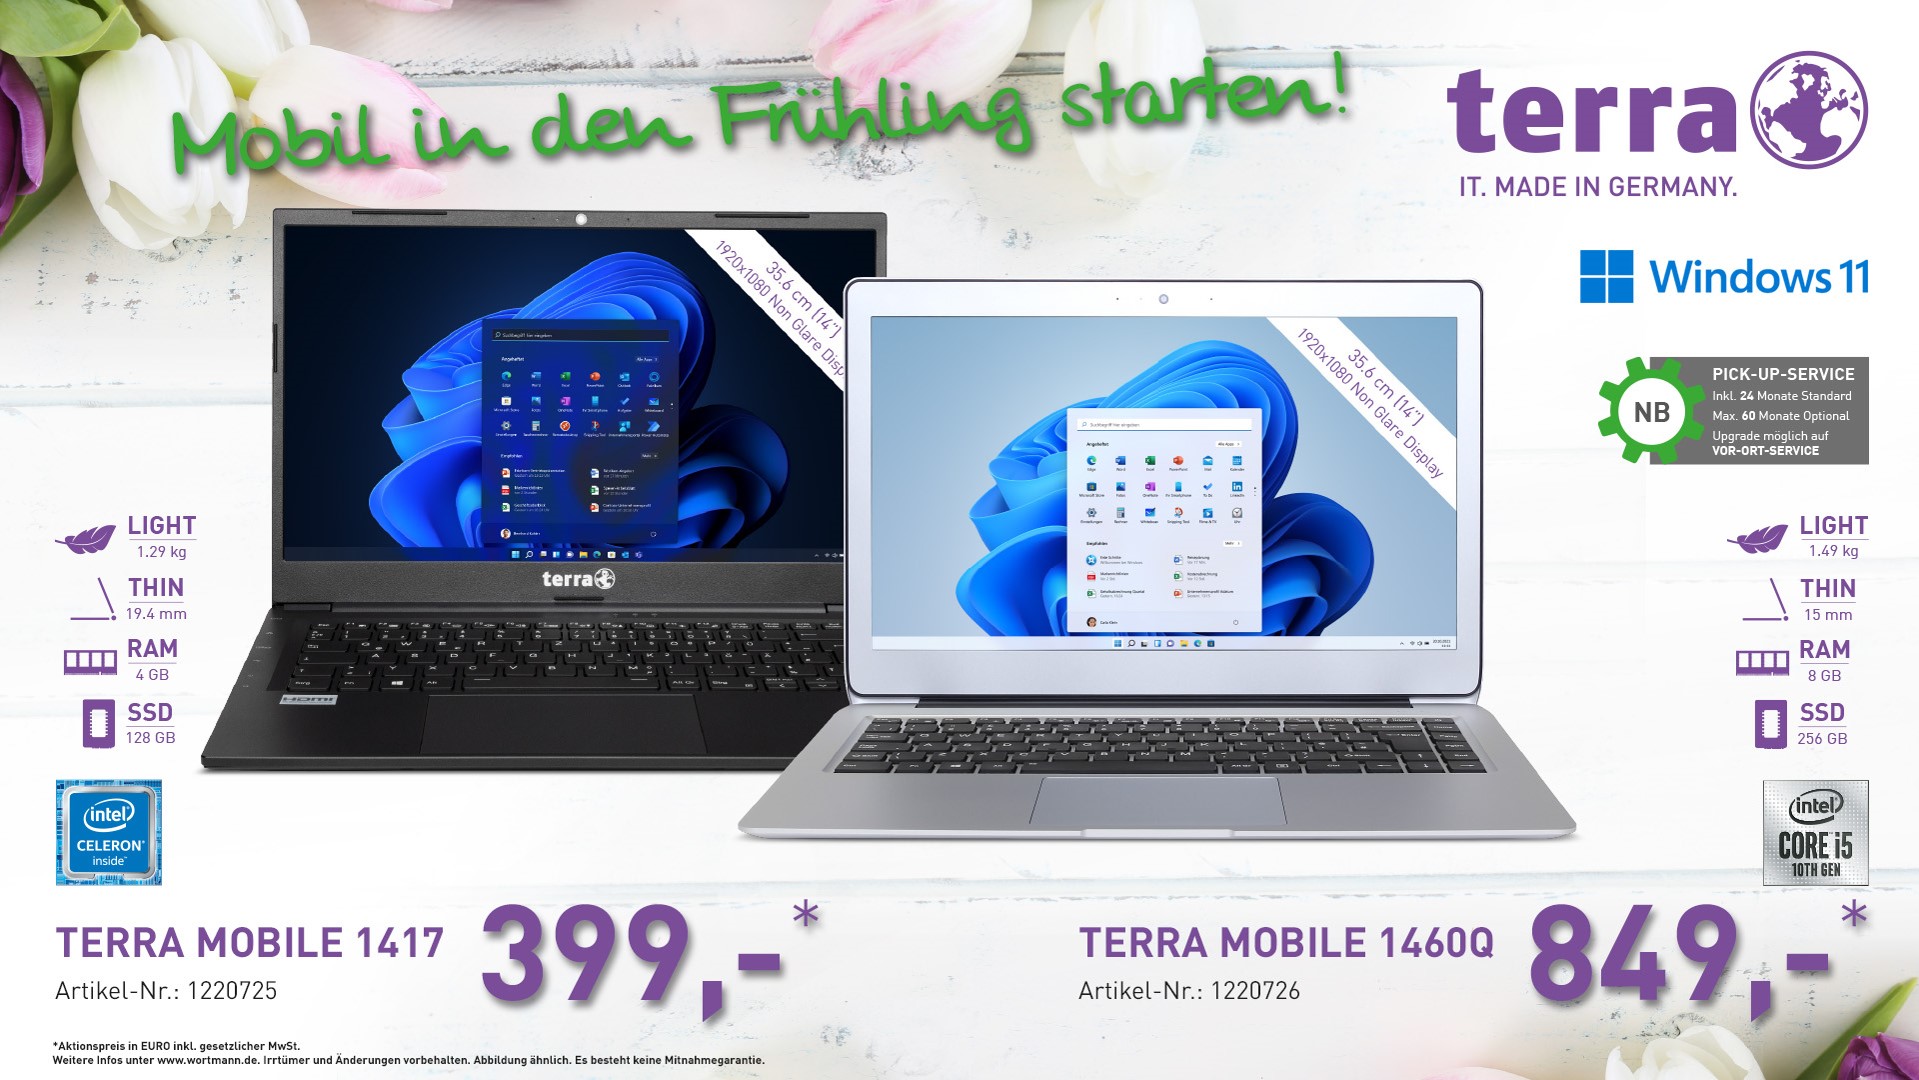 TERRA-Mobile-1460Q, TERRA-MOBILE-1417